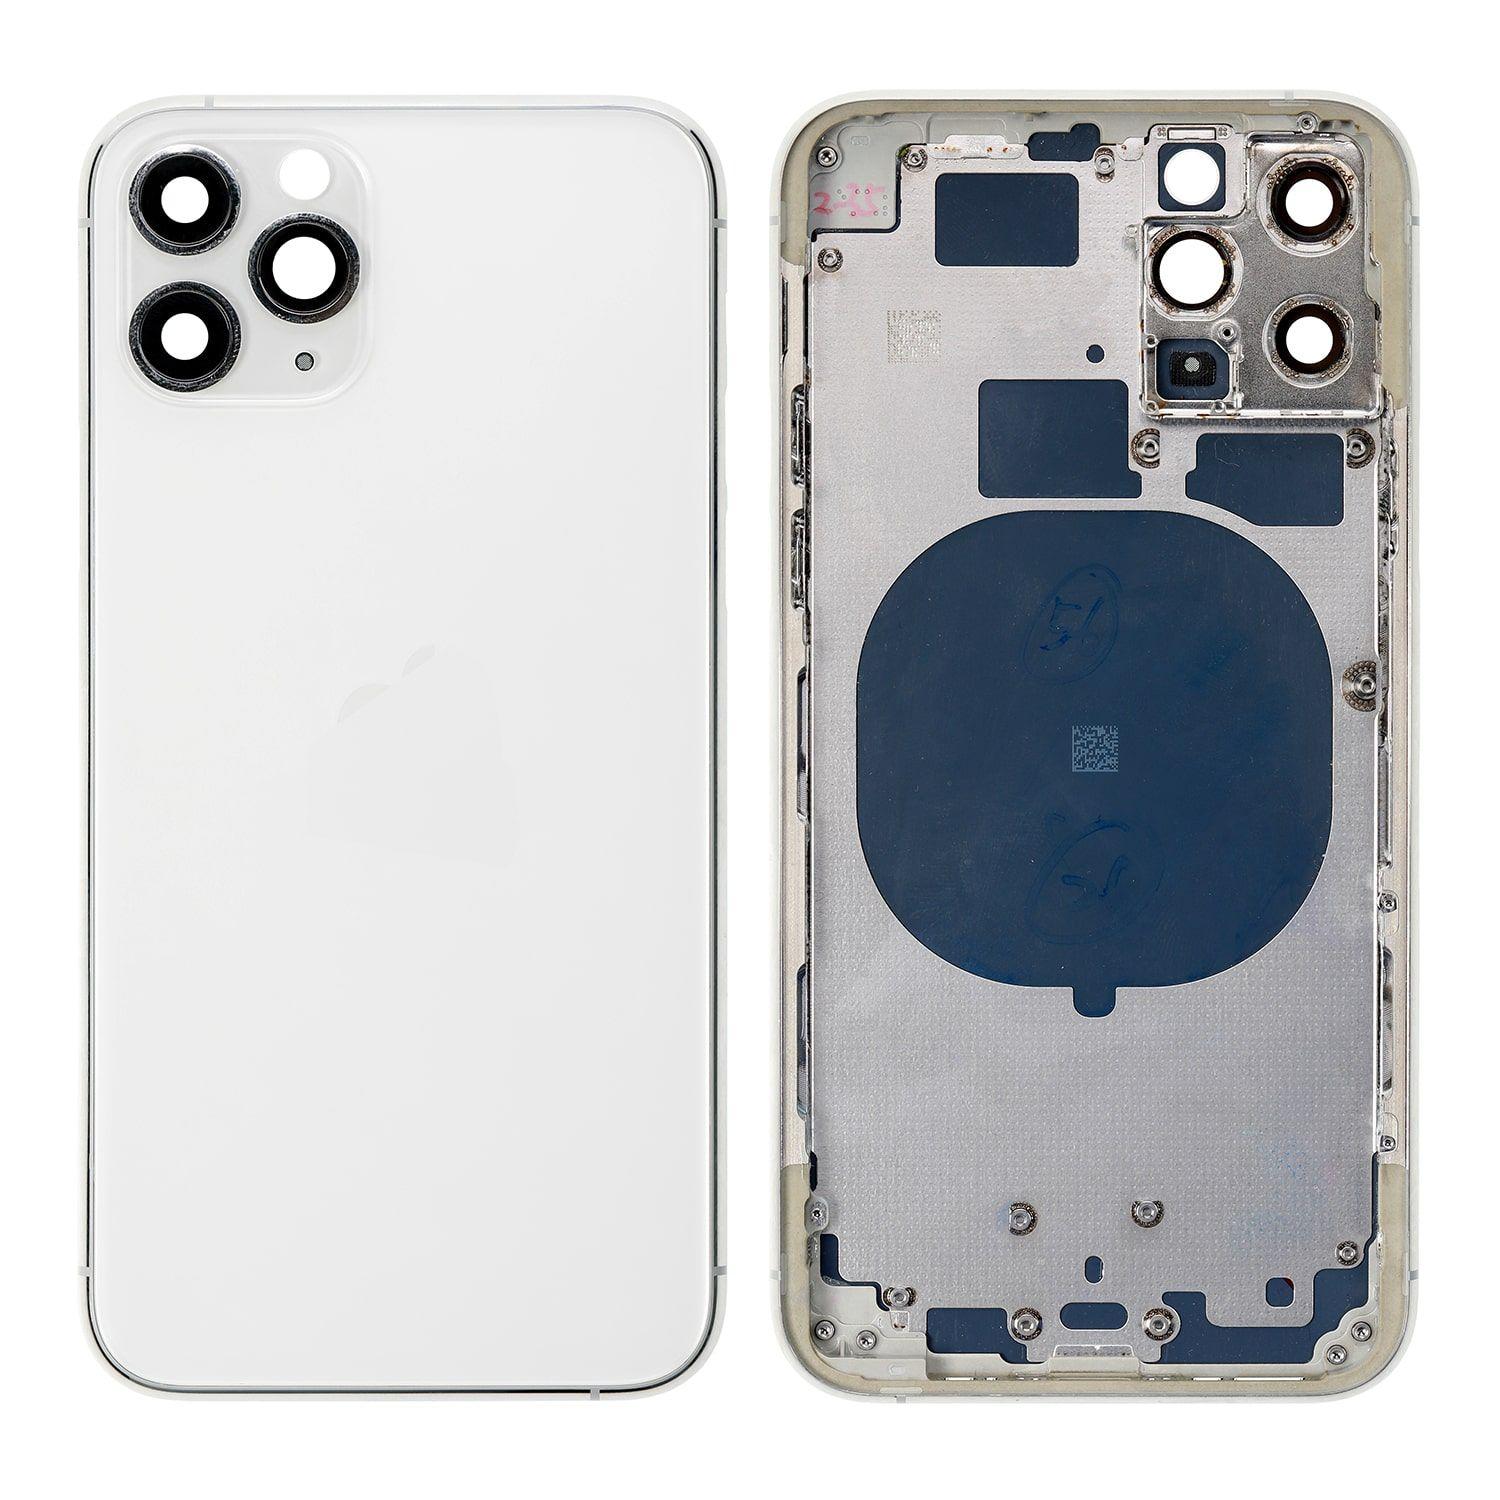 Korpus iPhone 11 Pro + zadní kryt bílý